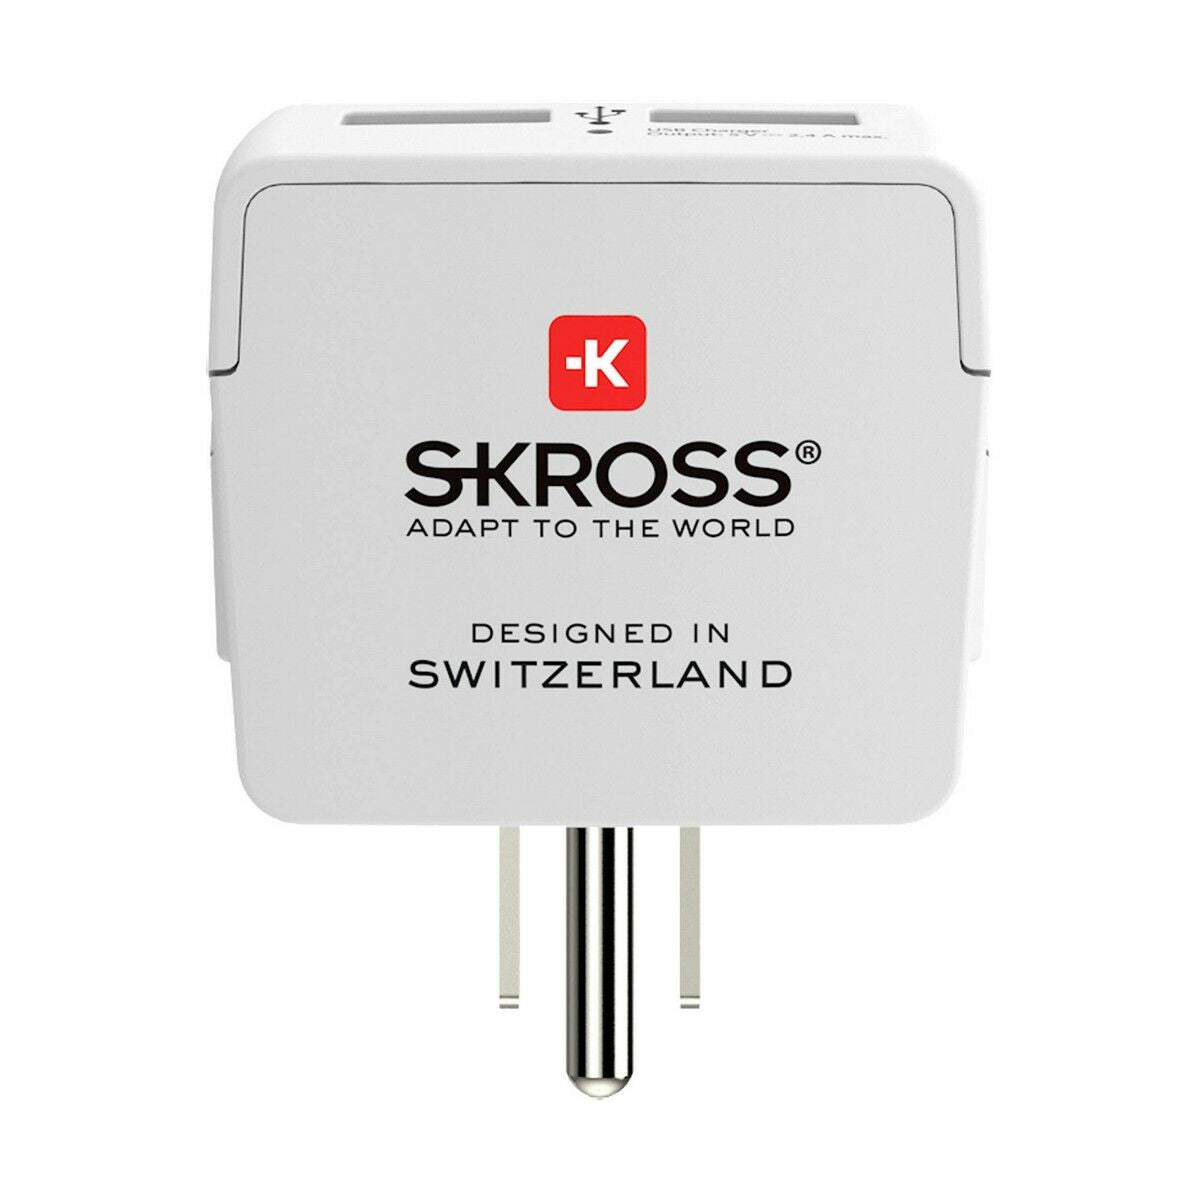 Netzadapter Skross 1500281 USB x 2 Europäisch Vereinigte Staaten von Amerika